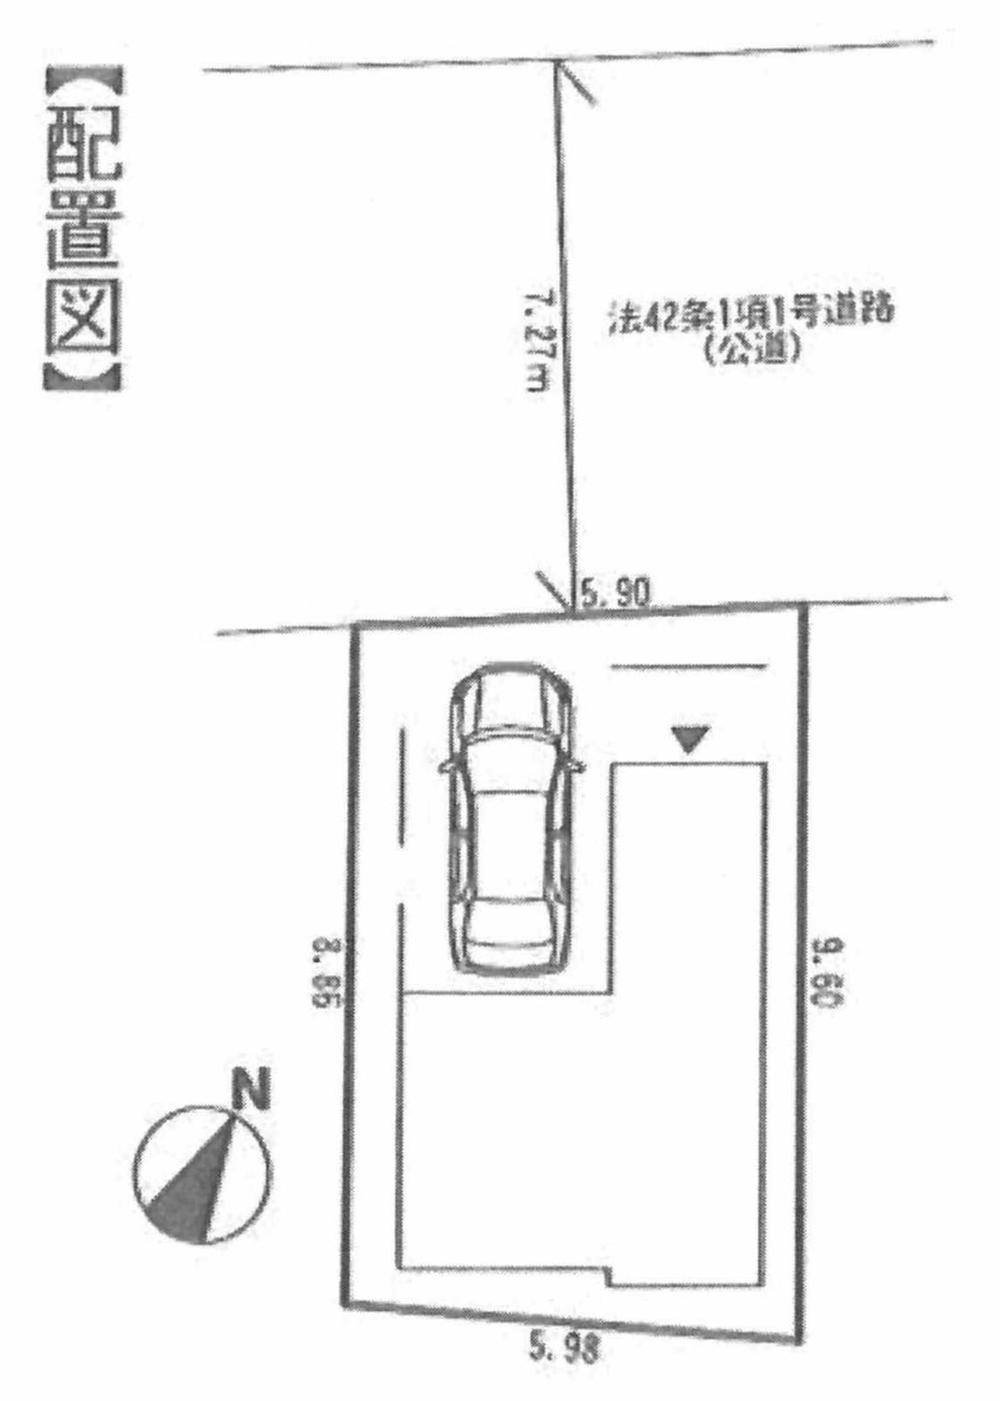 Compartment figure. 42,800,000 yen, 3LDK, Land area 54.8 sq m , Building area 95.22 sq m